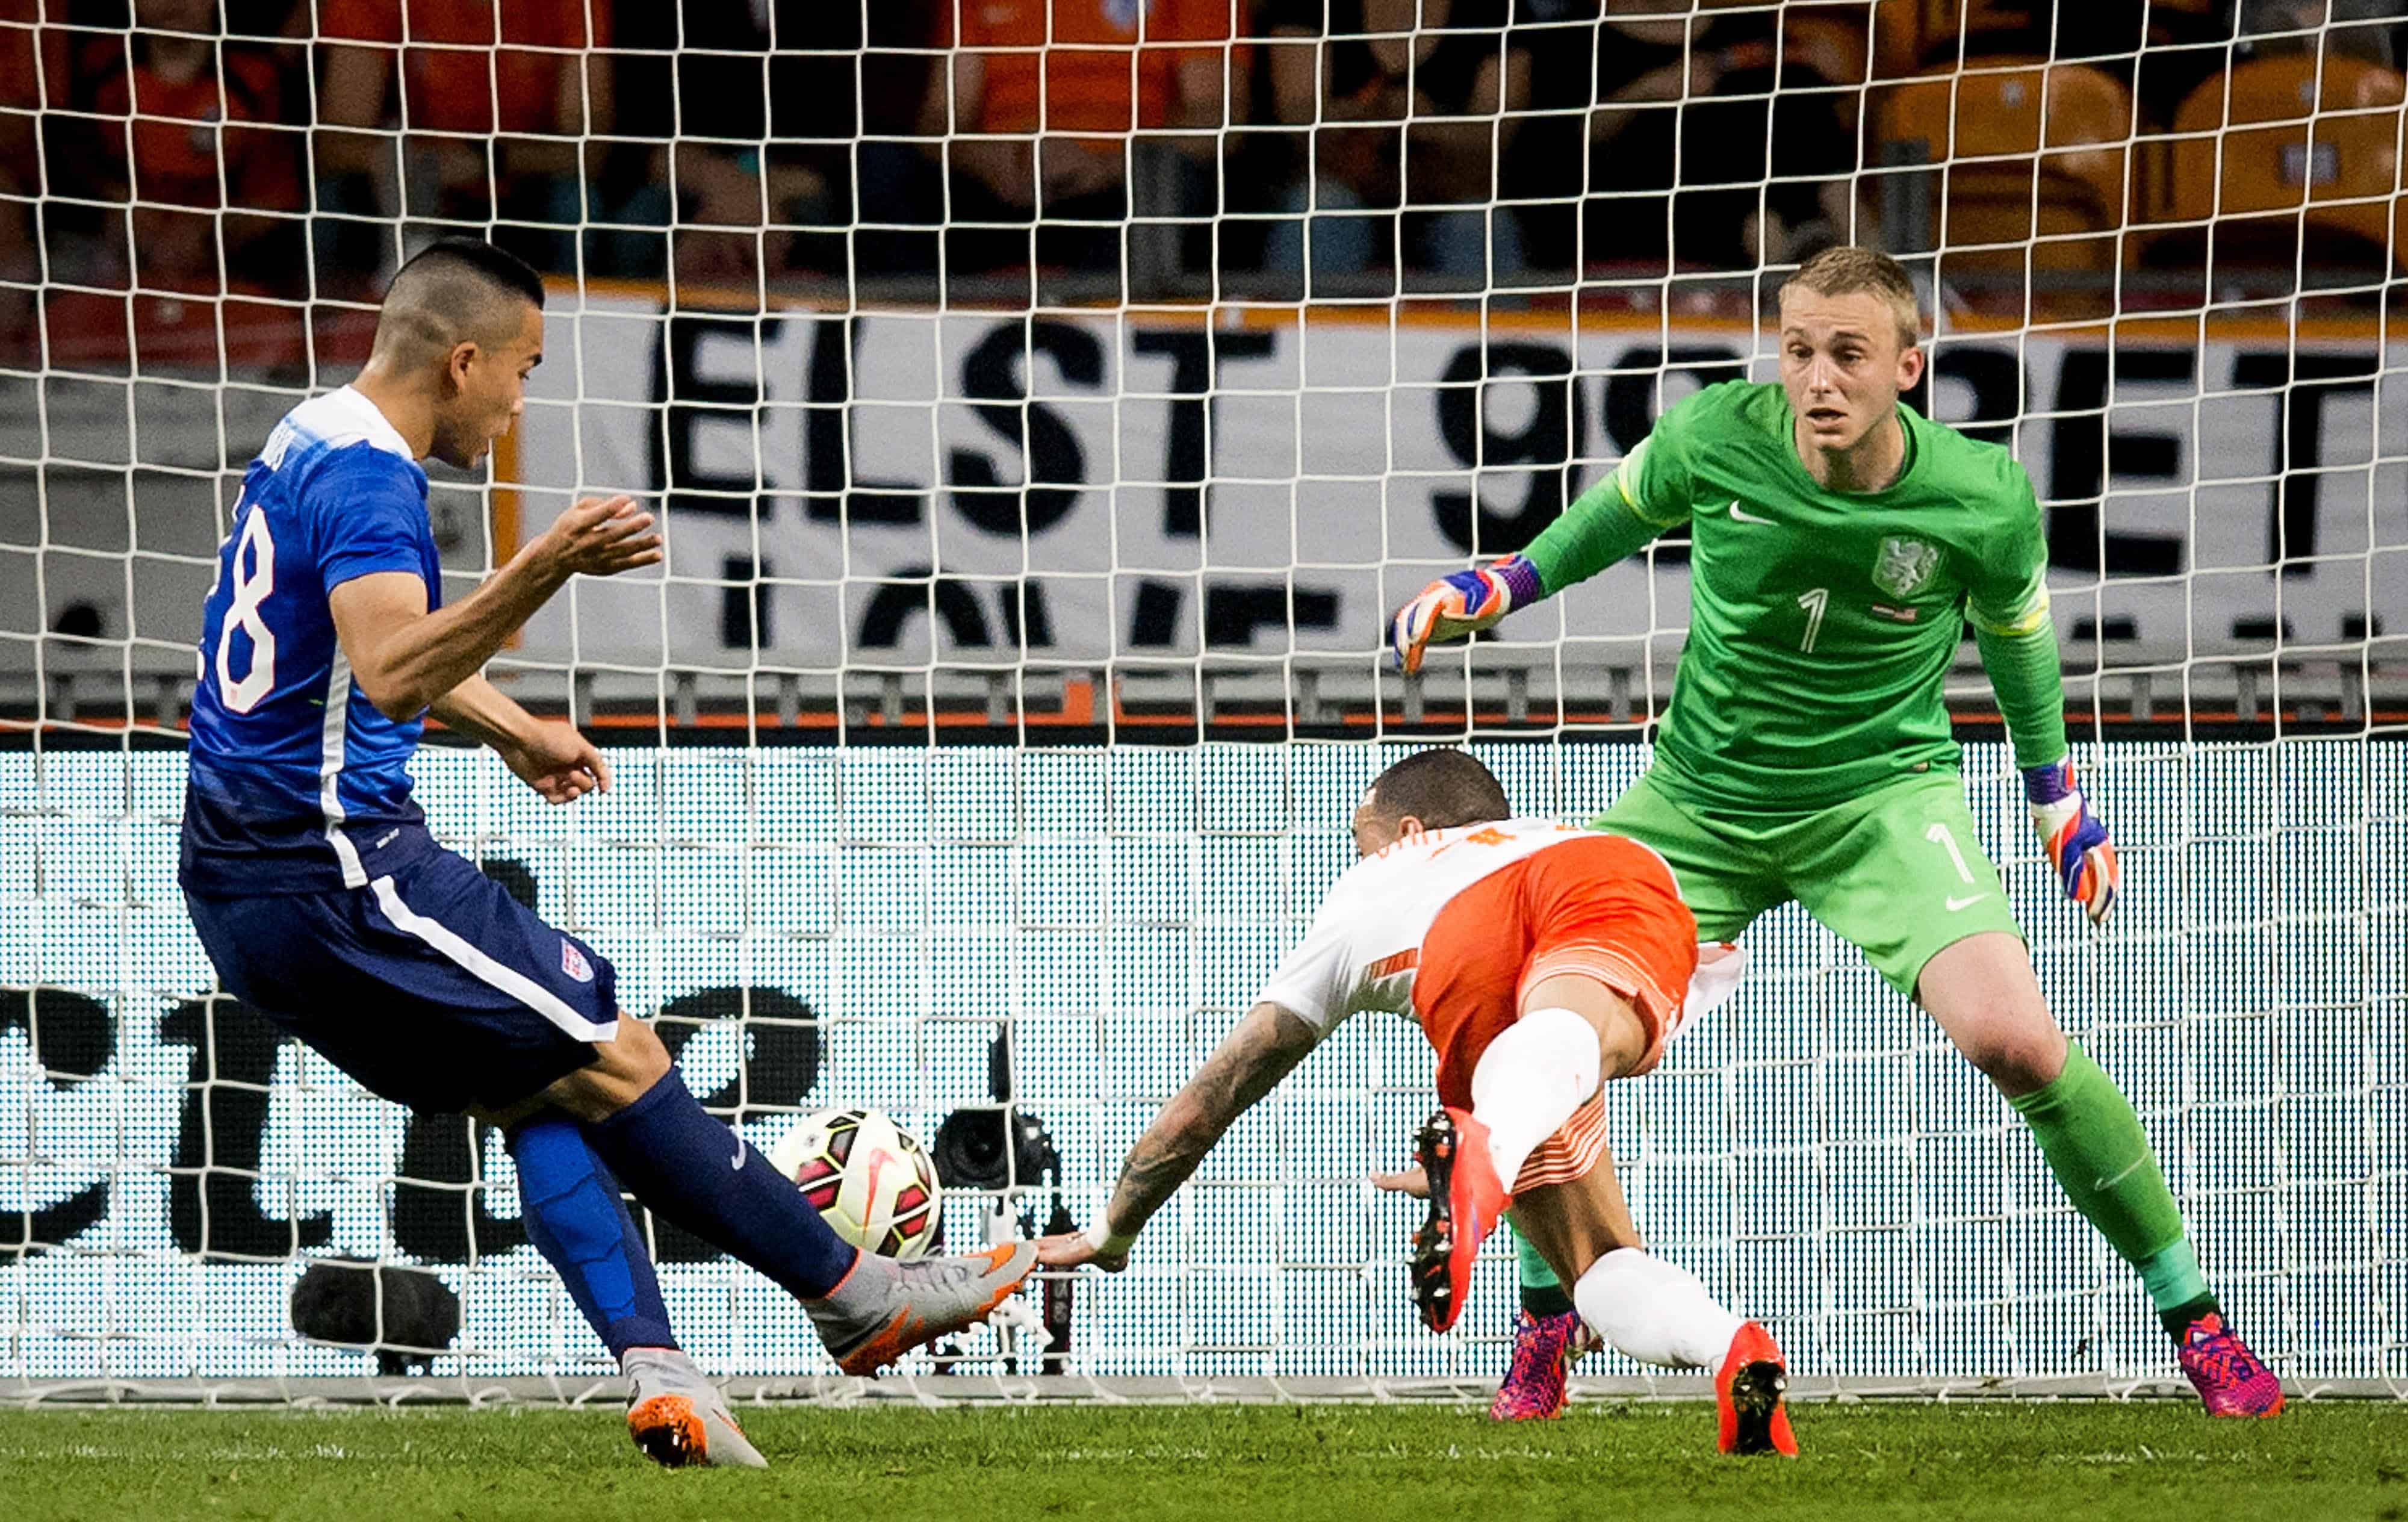 U.S. player Bobby Wood, left, scores a goal past the Netherlands' goalkeeper Jasper Cillessen.